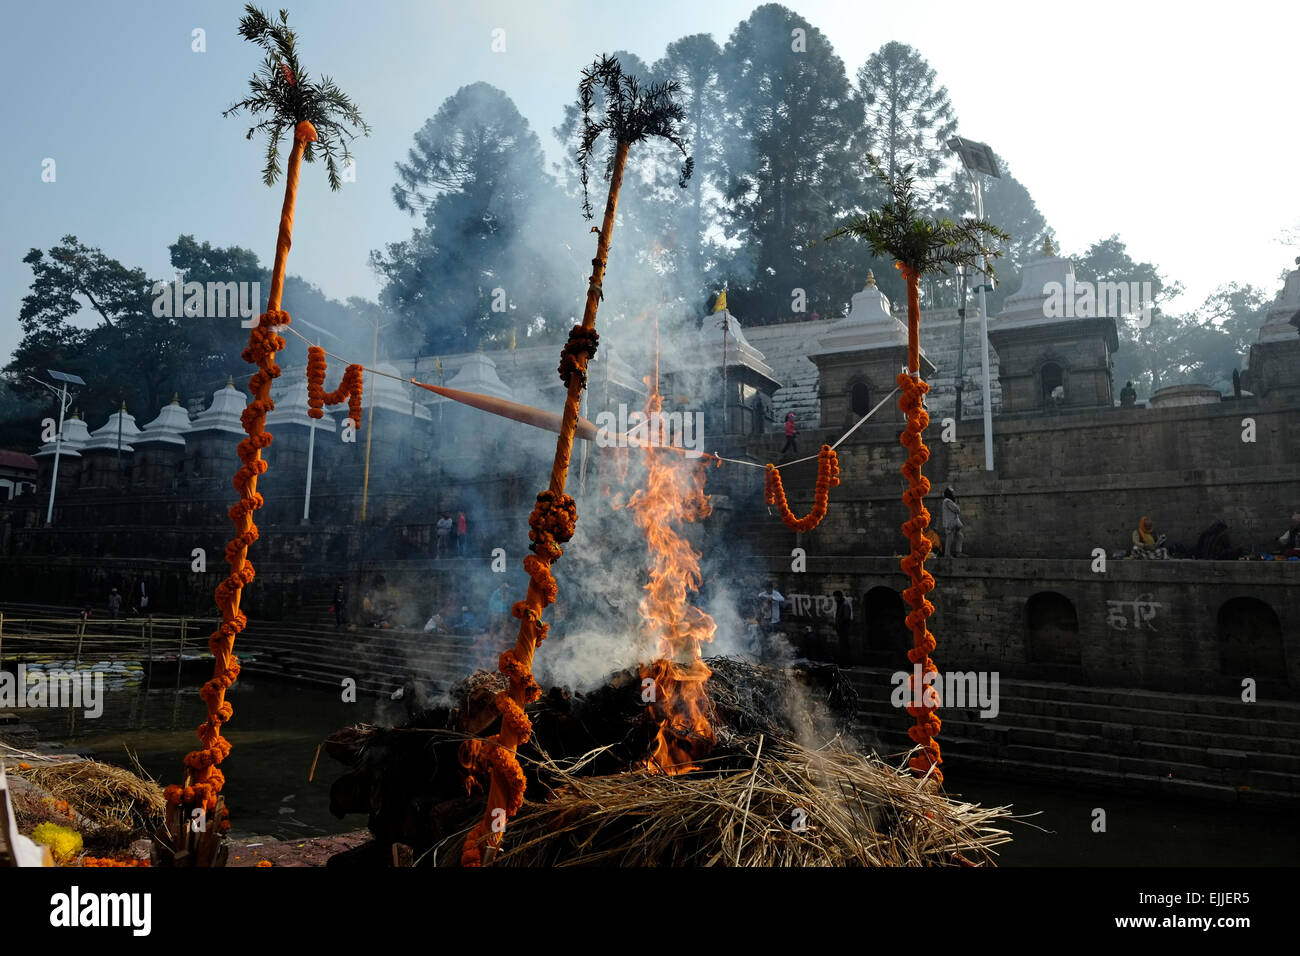 La cremazione dei morti avranno luogo presso il Tempio di Pashupatinath un indù santuario e uno dei più grandi siti di Shiva che si trova sulle rive del fiume Bagmati e elencato nella lista del Patrimonio Mondiale dell'UNESCO a Kathmandu in Nepal Foto Stock